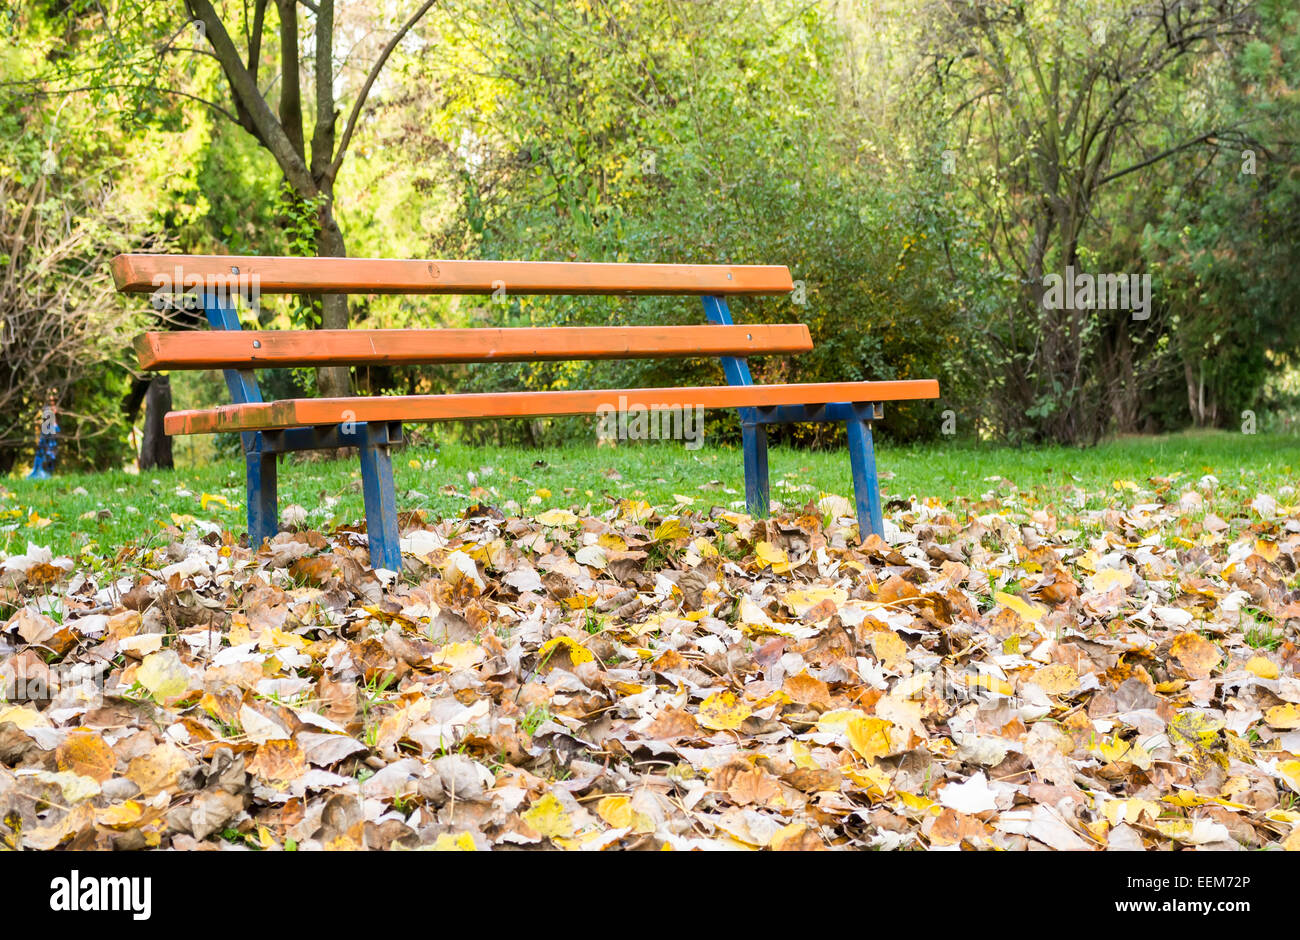 Établi dans un parc avec couche de feuilles mortes en face, décor spécifique à la saison d'automne Banque D'Images